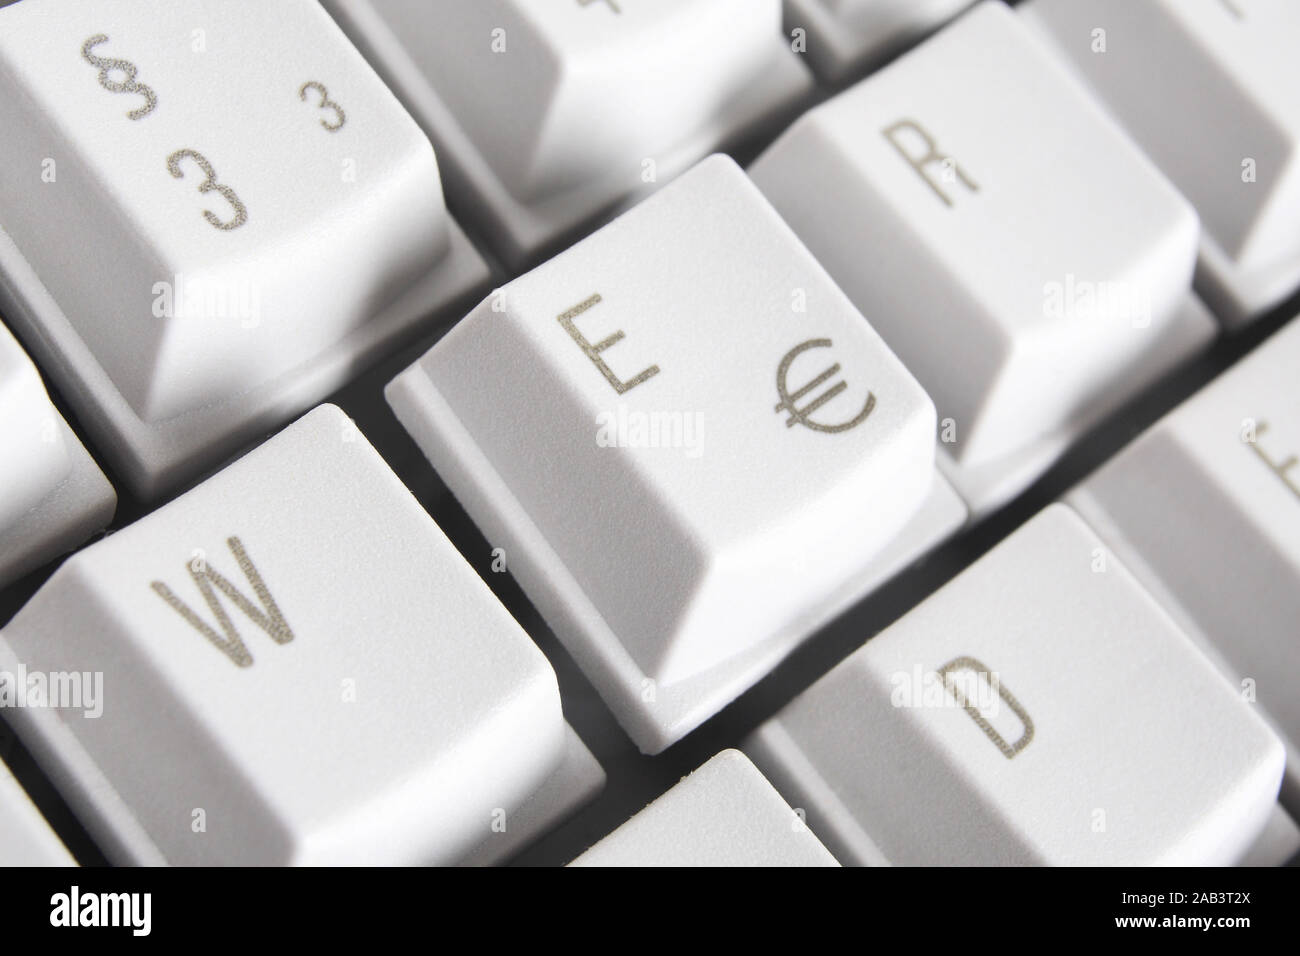 Eurozeichen auf einer Tastatur Stock Photo